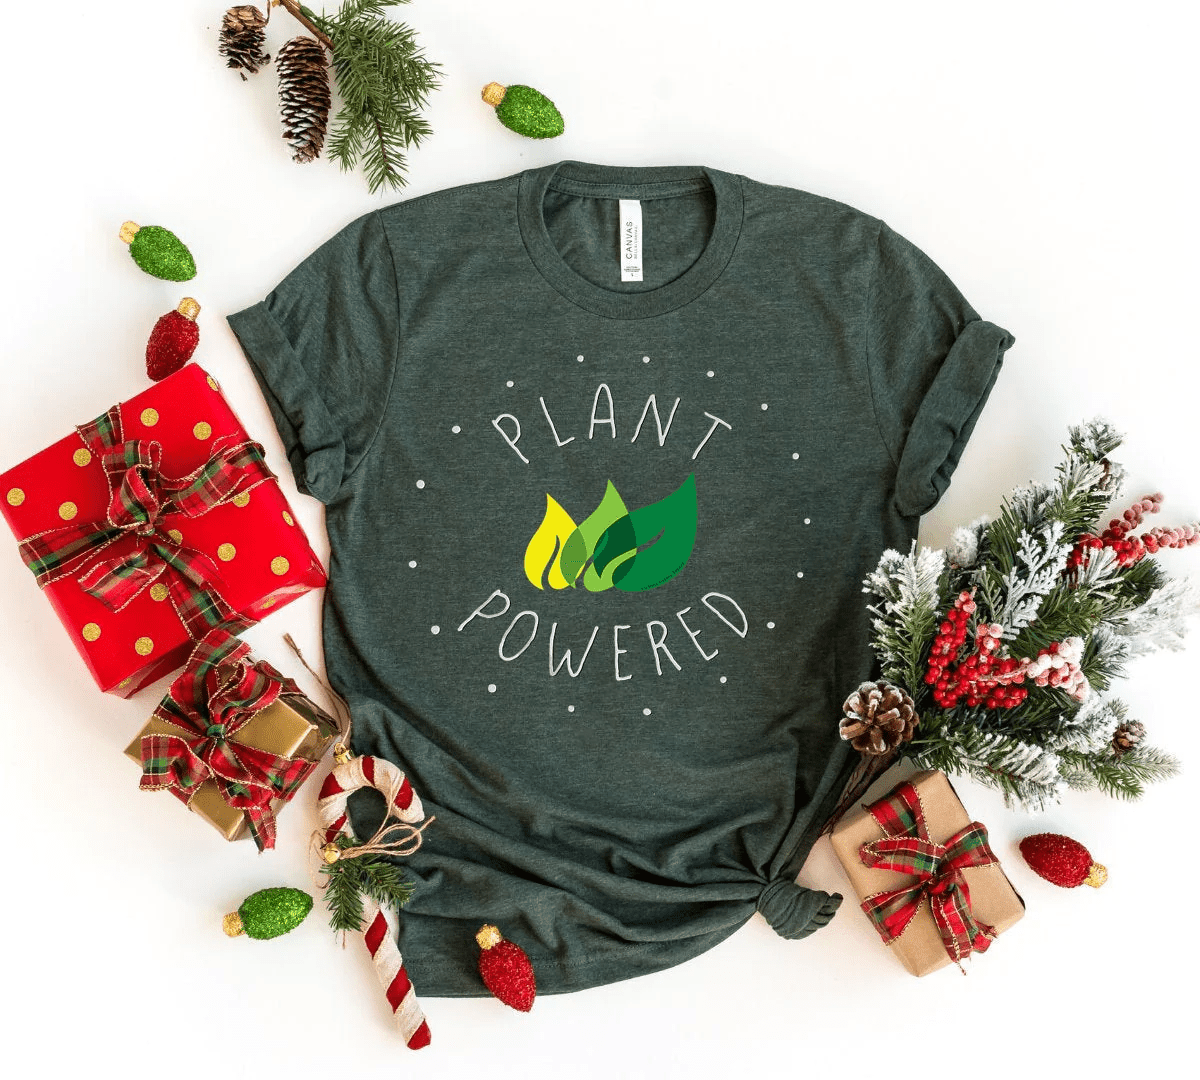 Plant Powered T-shirt Christmas Gift For Vegans